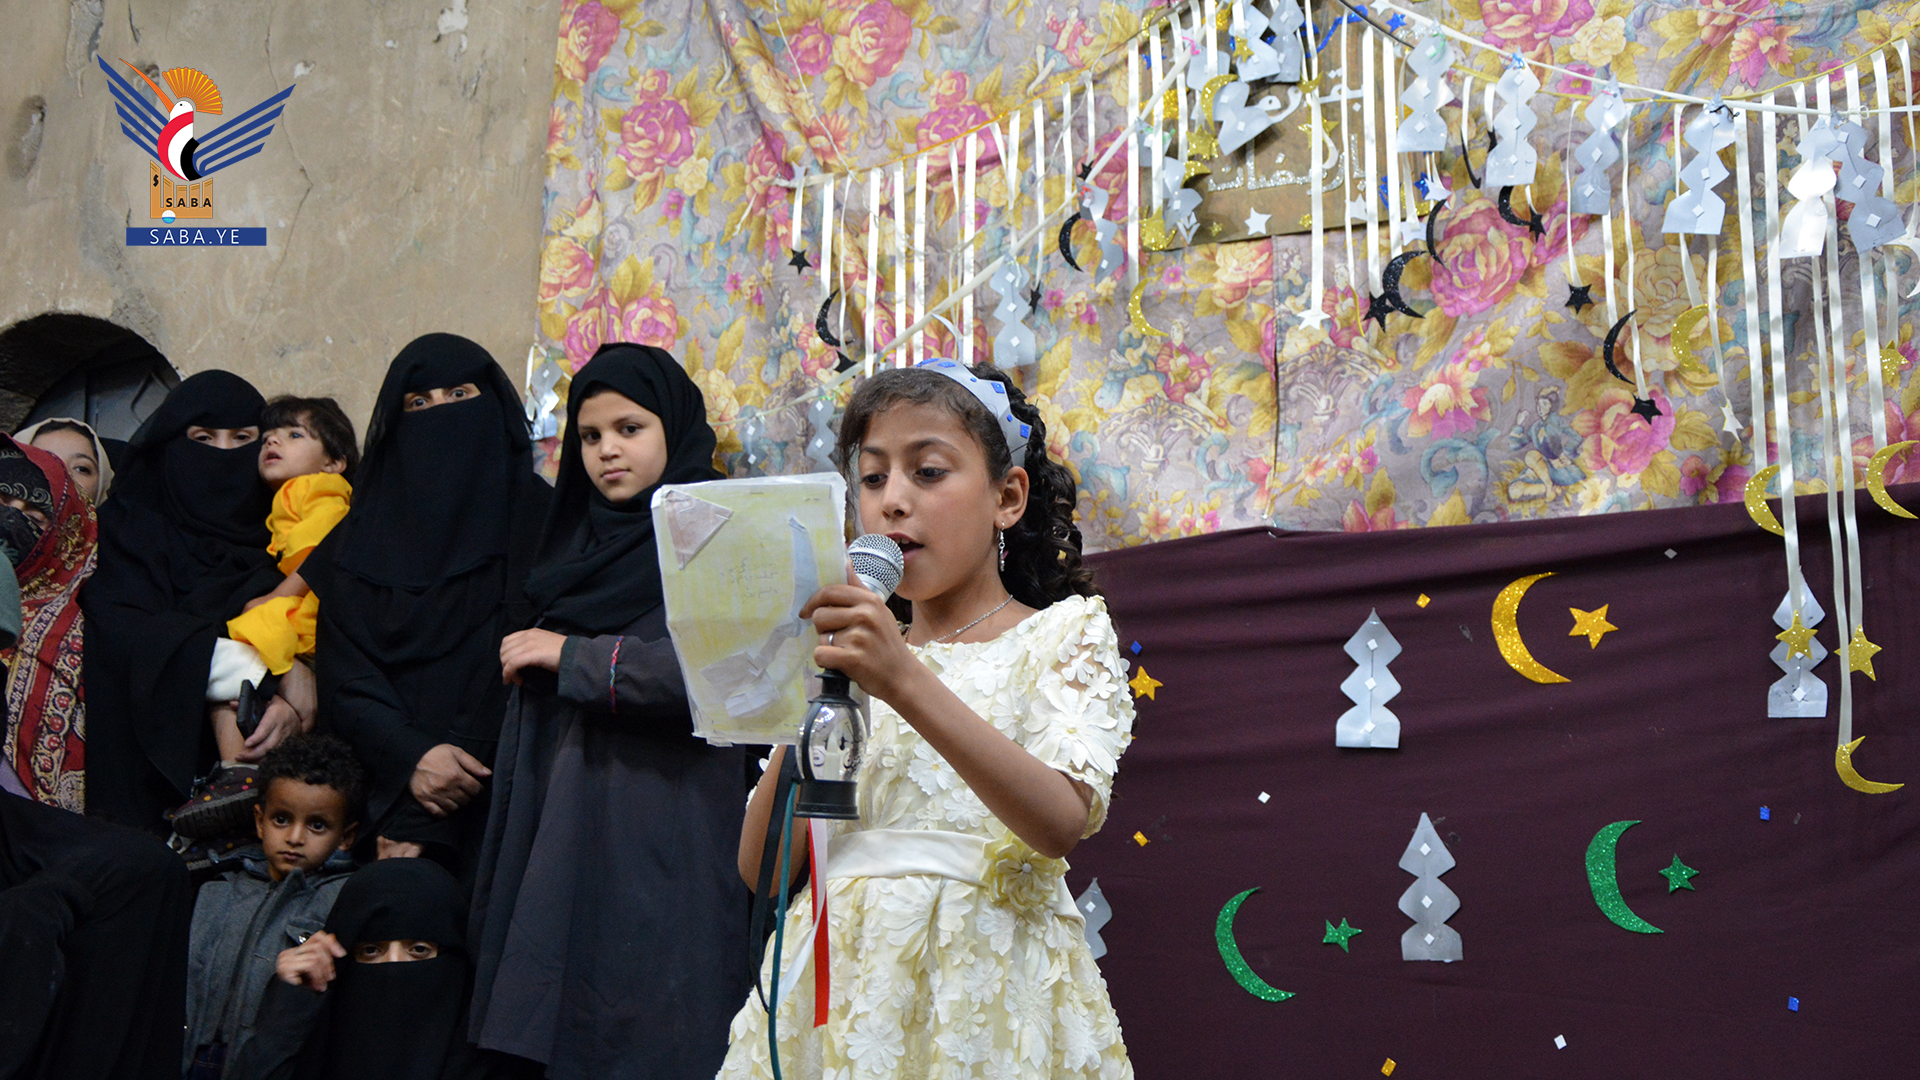 أطفال وبراعم حارة معمر بصنعاء القديمة يحتفون بقدوم شهر رمضان